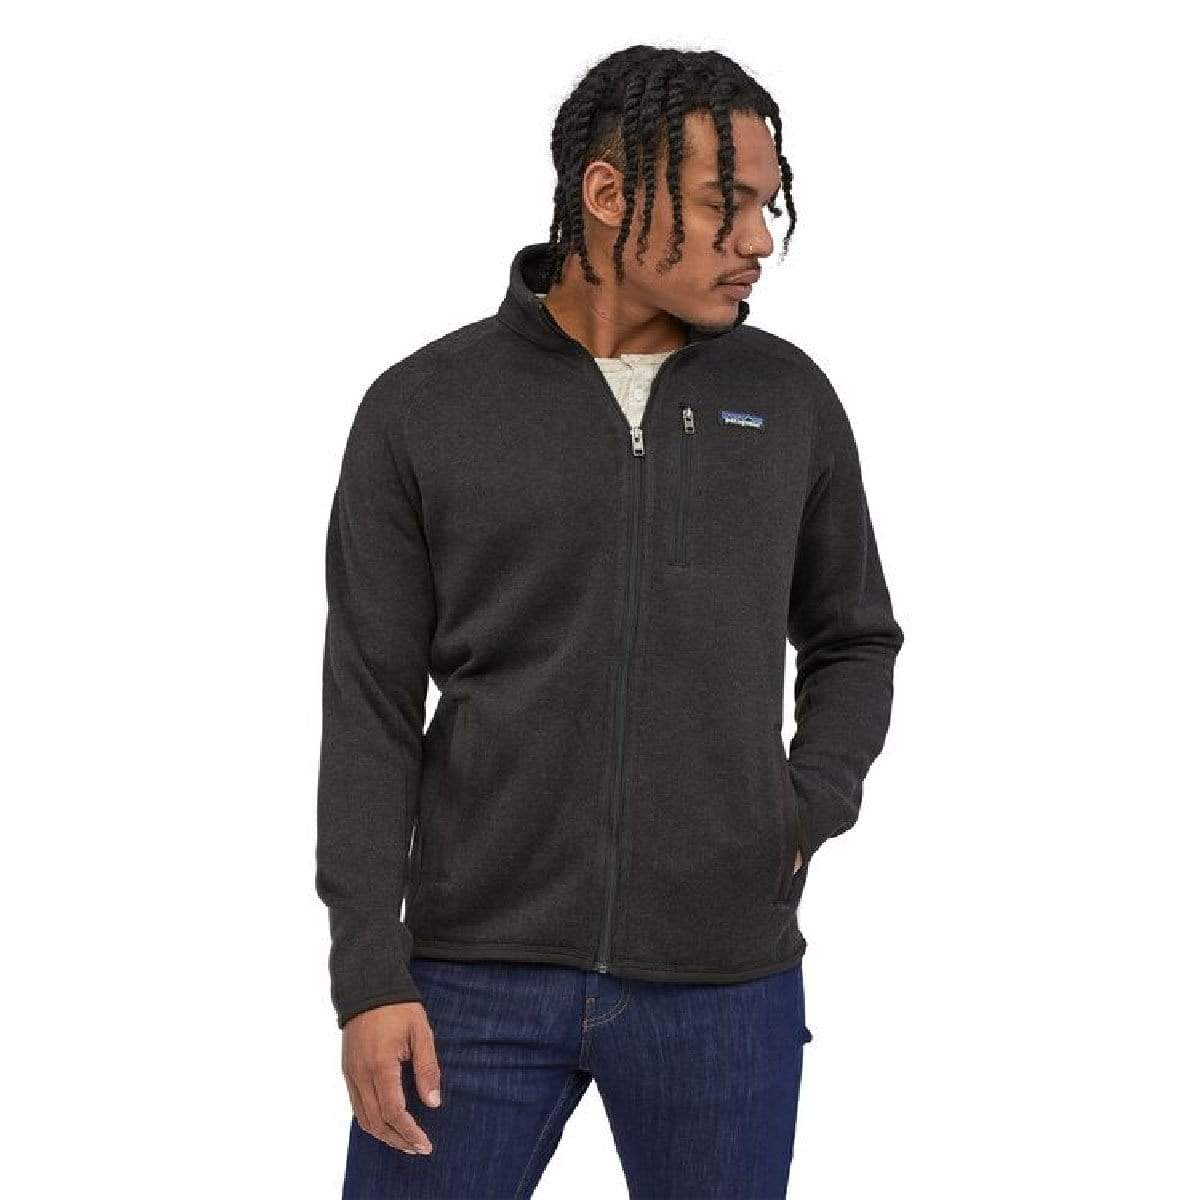 jsaierl Cardigan Sweaters for Men Knit Full Zip Stand Collar Woolen Outwear  Long Sleeve Slim Cozy Sweater Jacket - Walmart.com